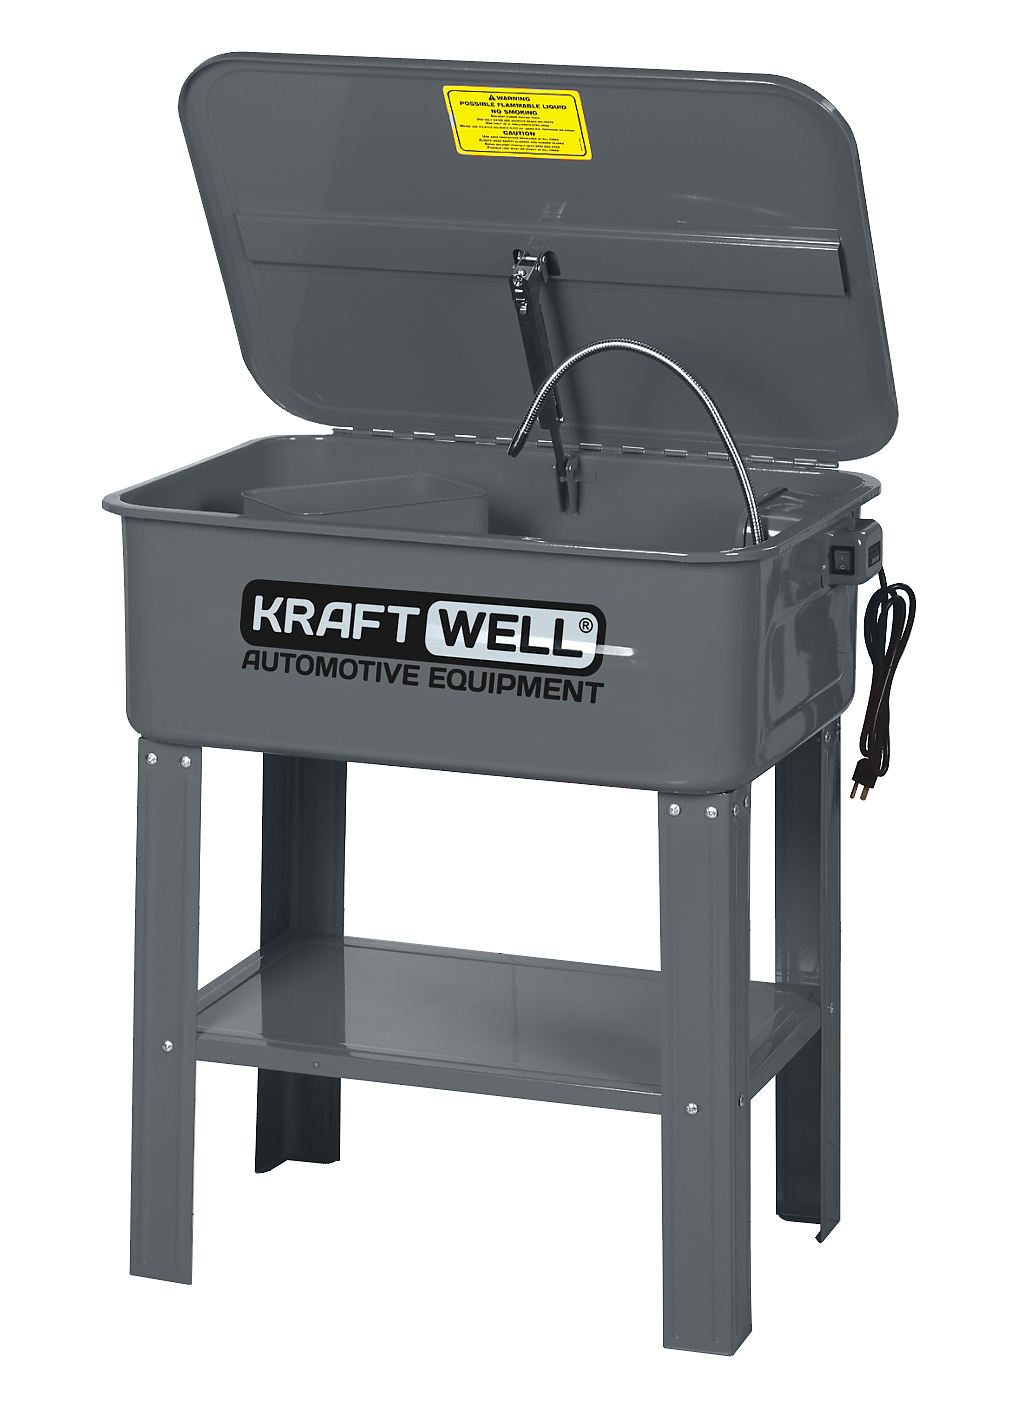 KRW-PW75 Установка для мойки деталей напольная электрическая, 75 л KraftWell